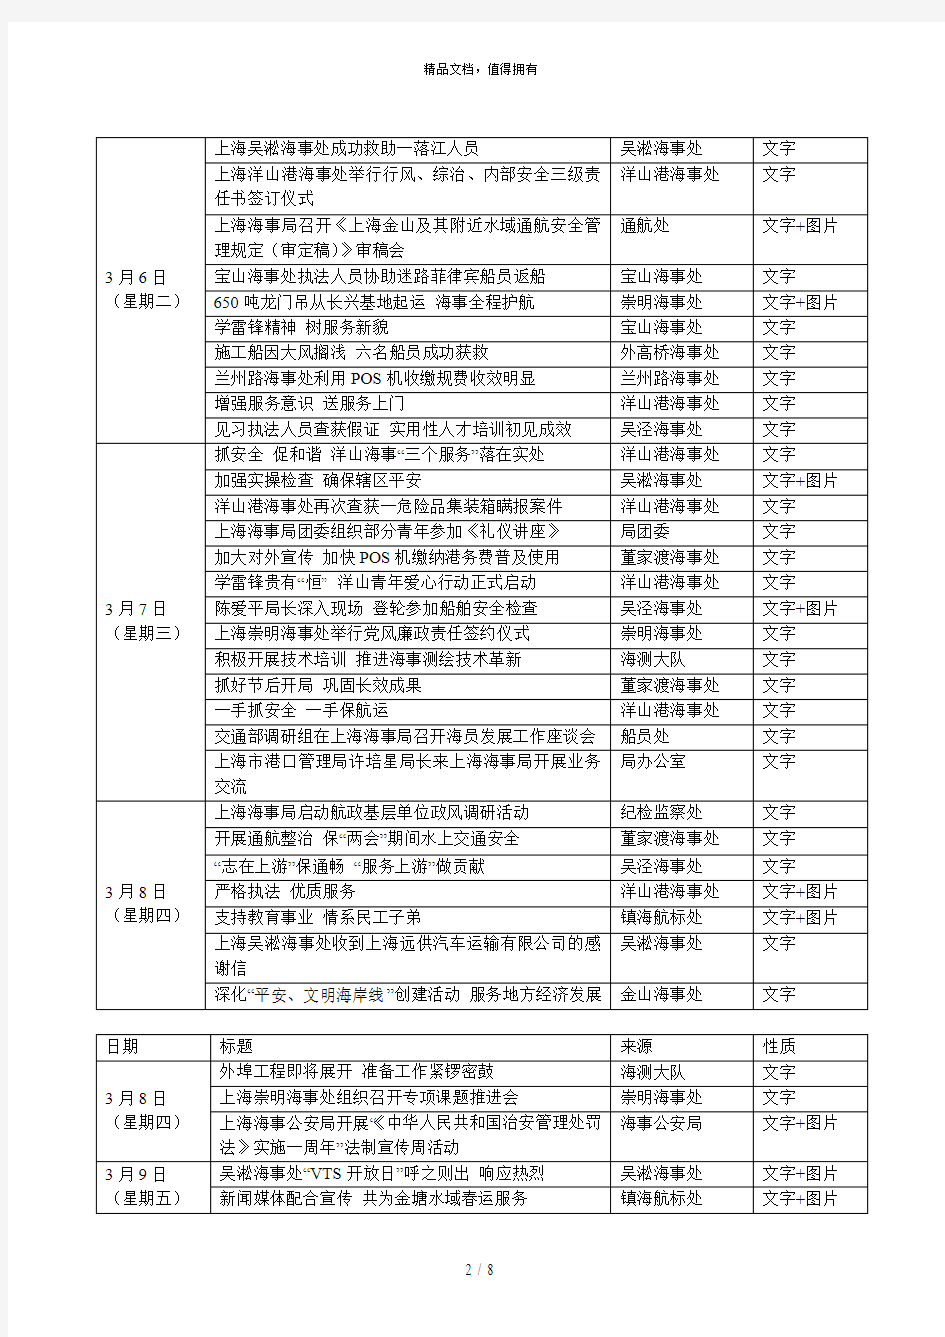 部海事局内网、上海海事局外网信息采用情况汇总(年3